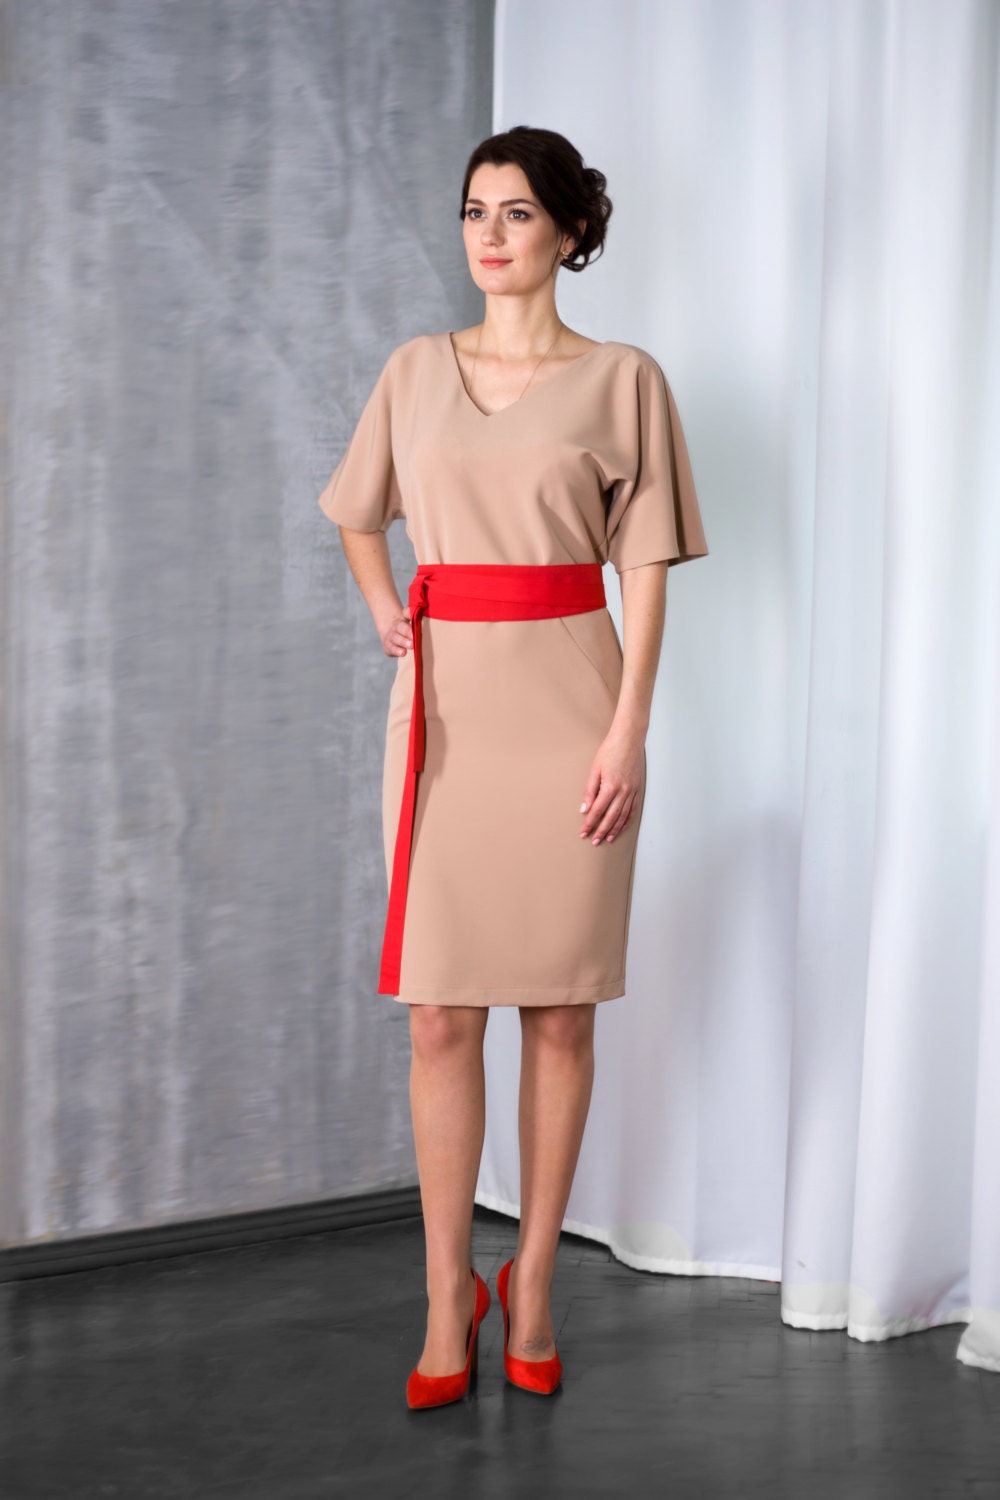 Kimono-Dress by TAVROVSKA Biege Color Knee-Length